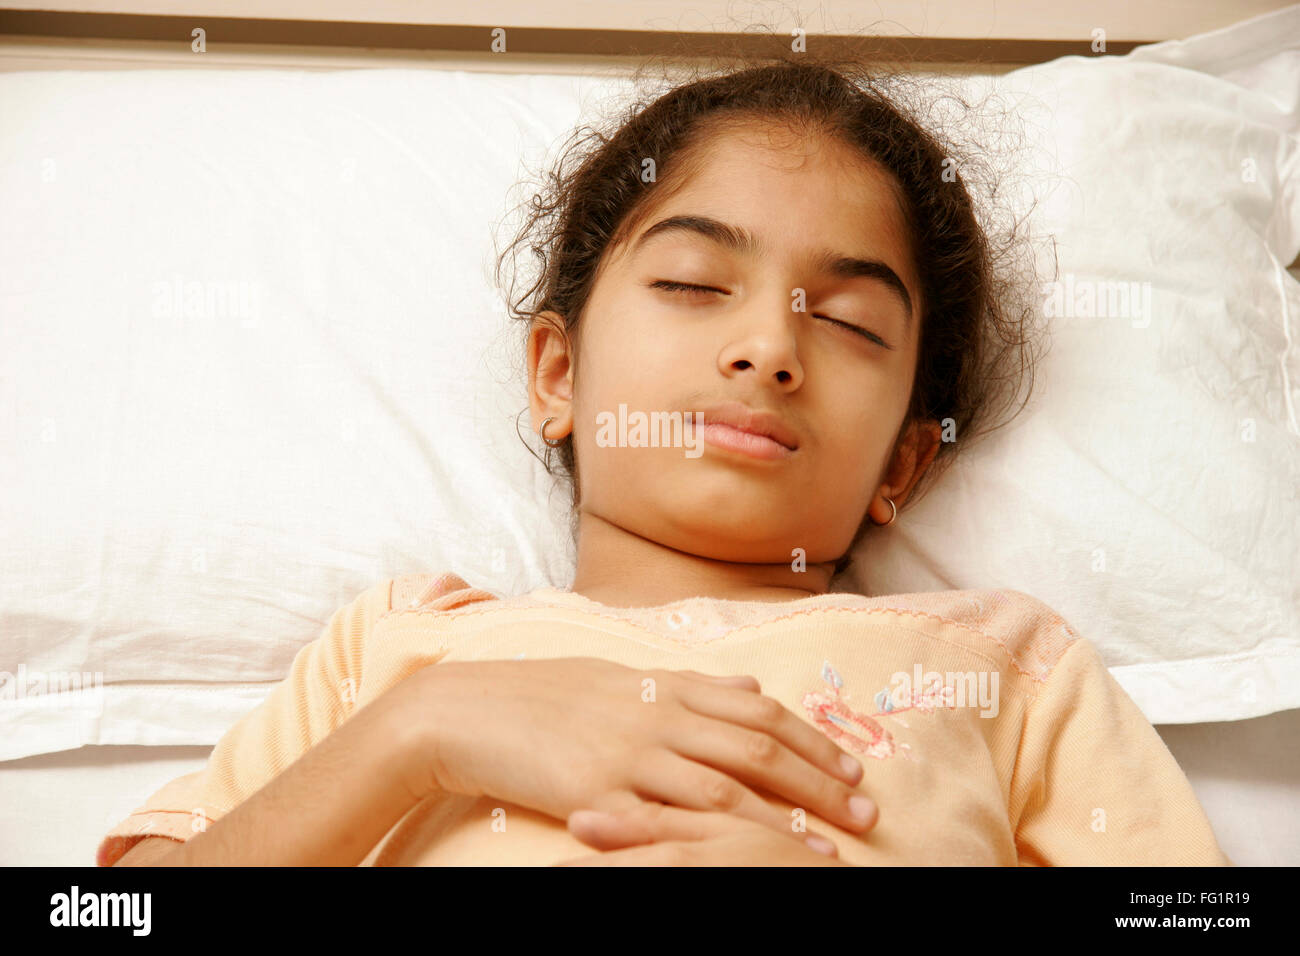 South Asian Indian 9 anni ragazza indossando peach colore avente nightwear suono addormentato sul letto signor#191 Foto Stock